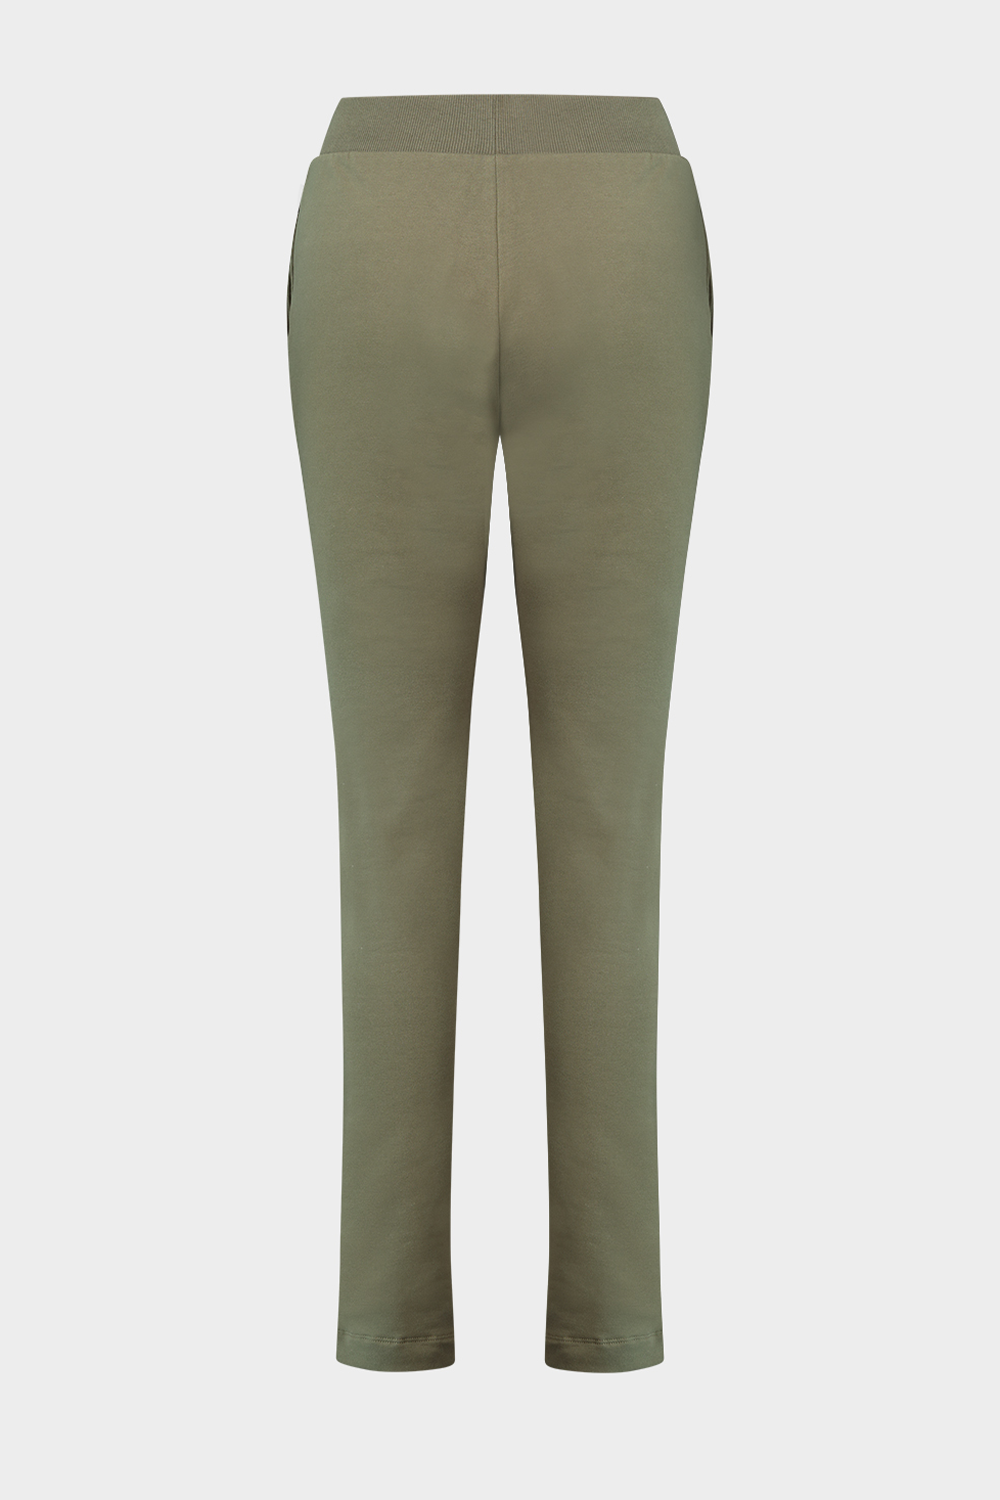 מכנסי טרנינג לנשים בצבע ירוק